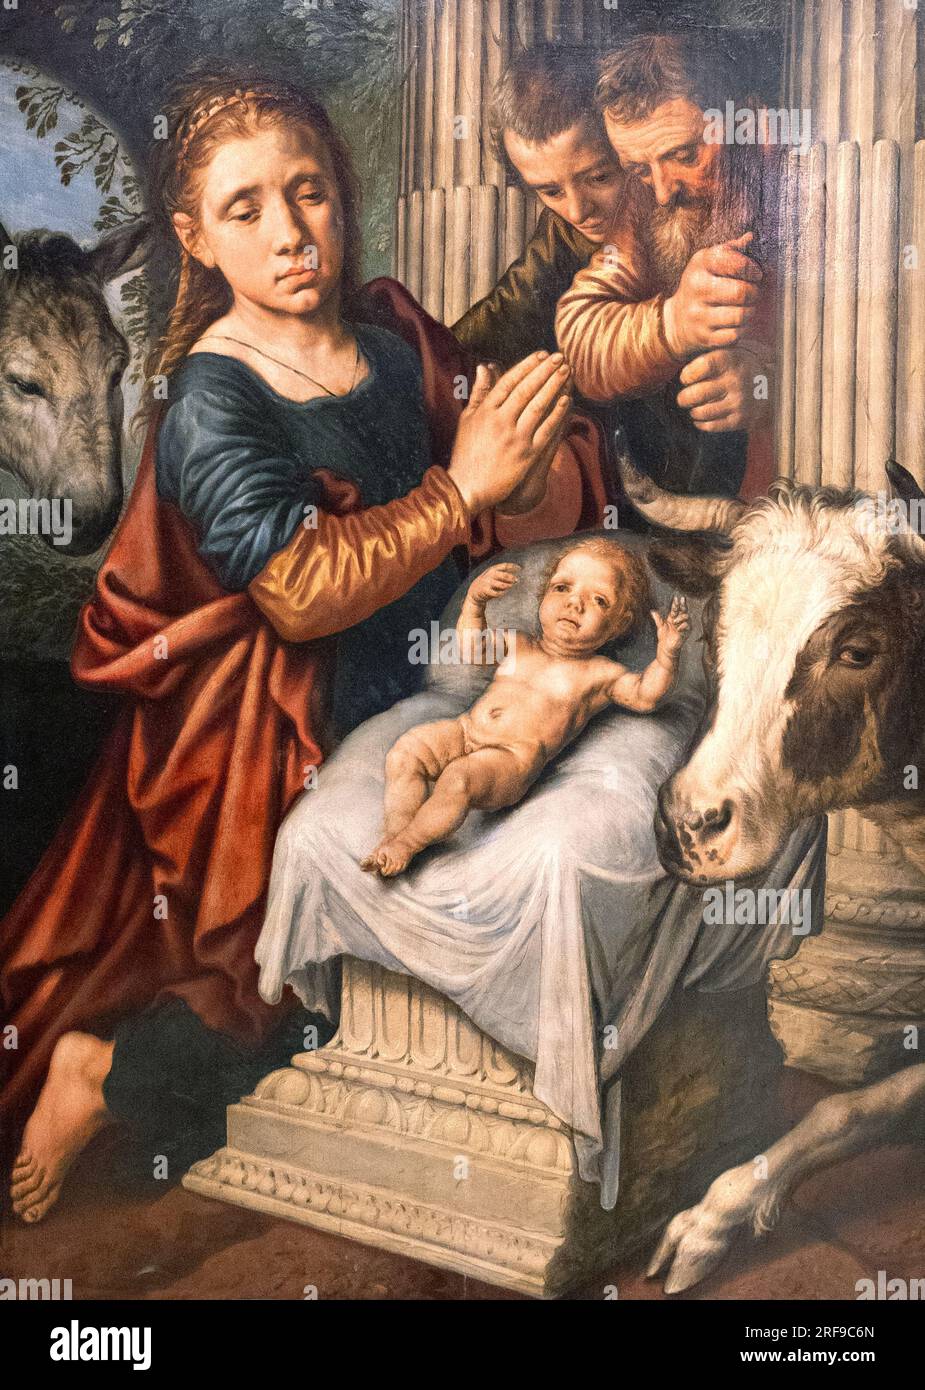 Pieter Aertsen peinture ; l'adoration des bergers - l'adoration des bergers ; peintre hollandais du 16e siècle, 1508-1575 Banque D'Images